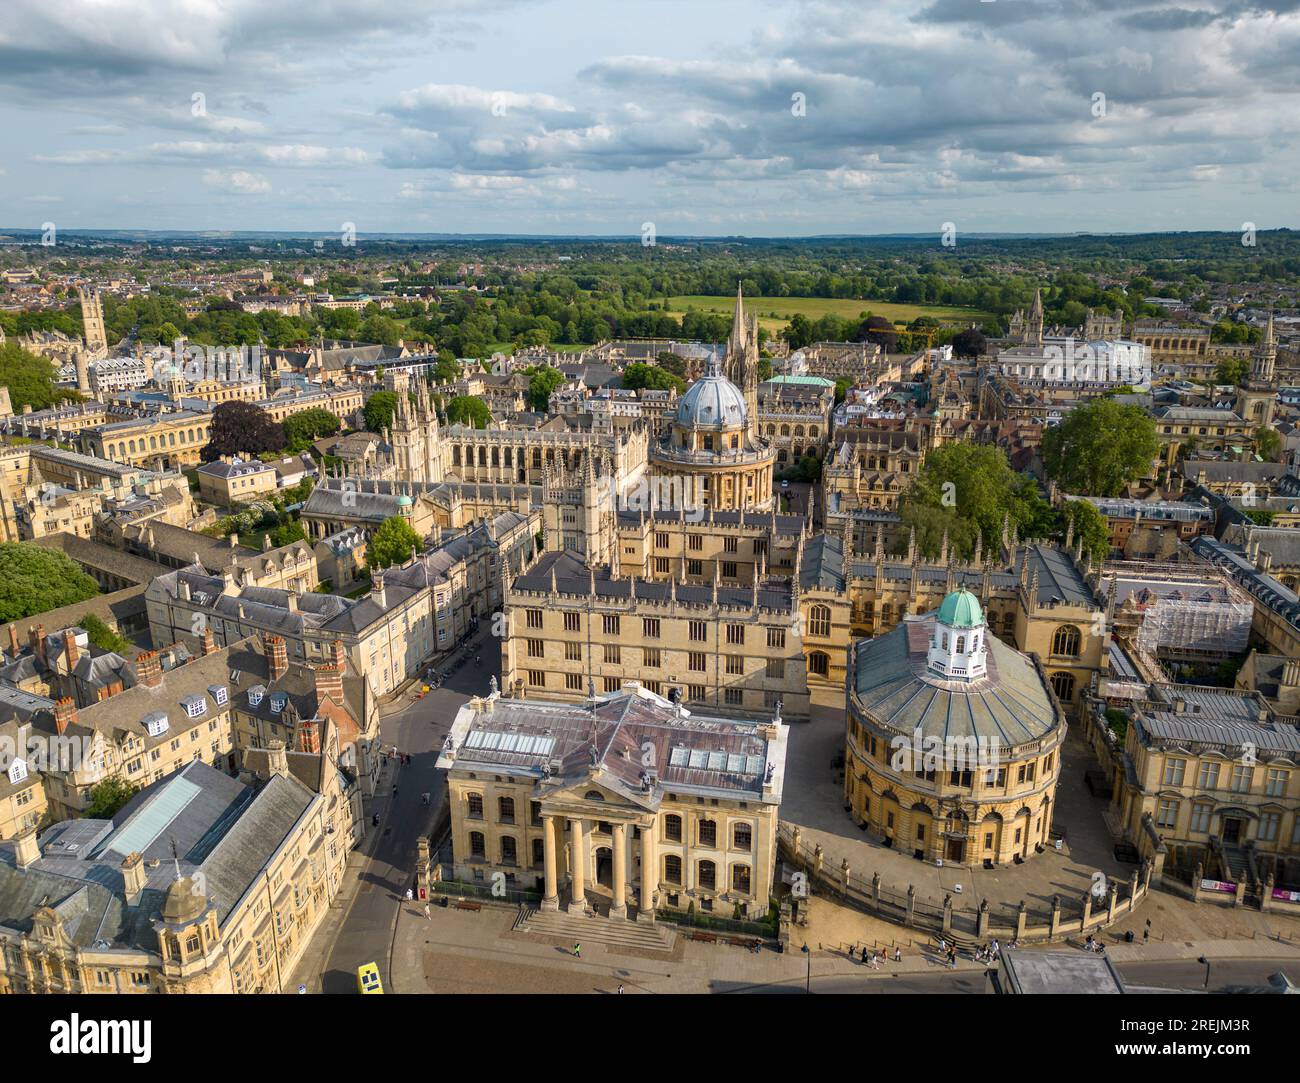 Orbite aérienne de l'Université d'Oxford, Oxfordshire, Angleterre Banque D'Images